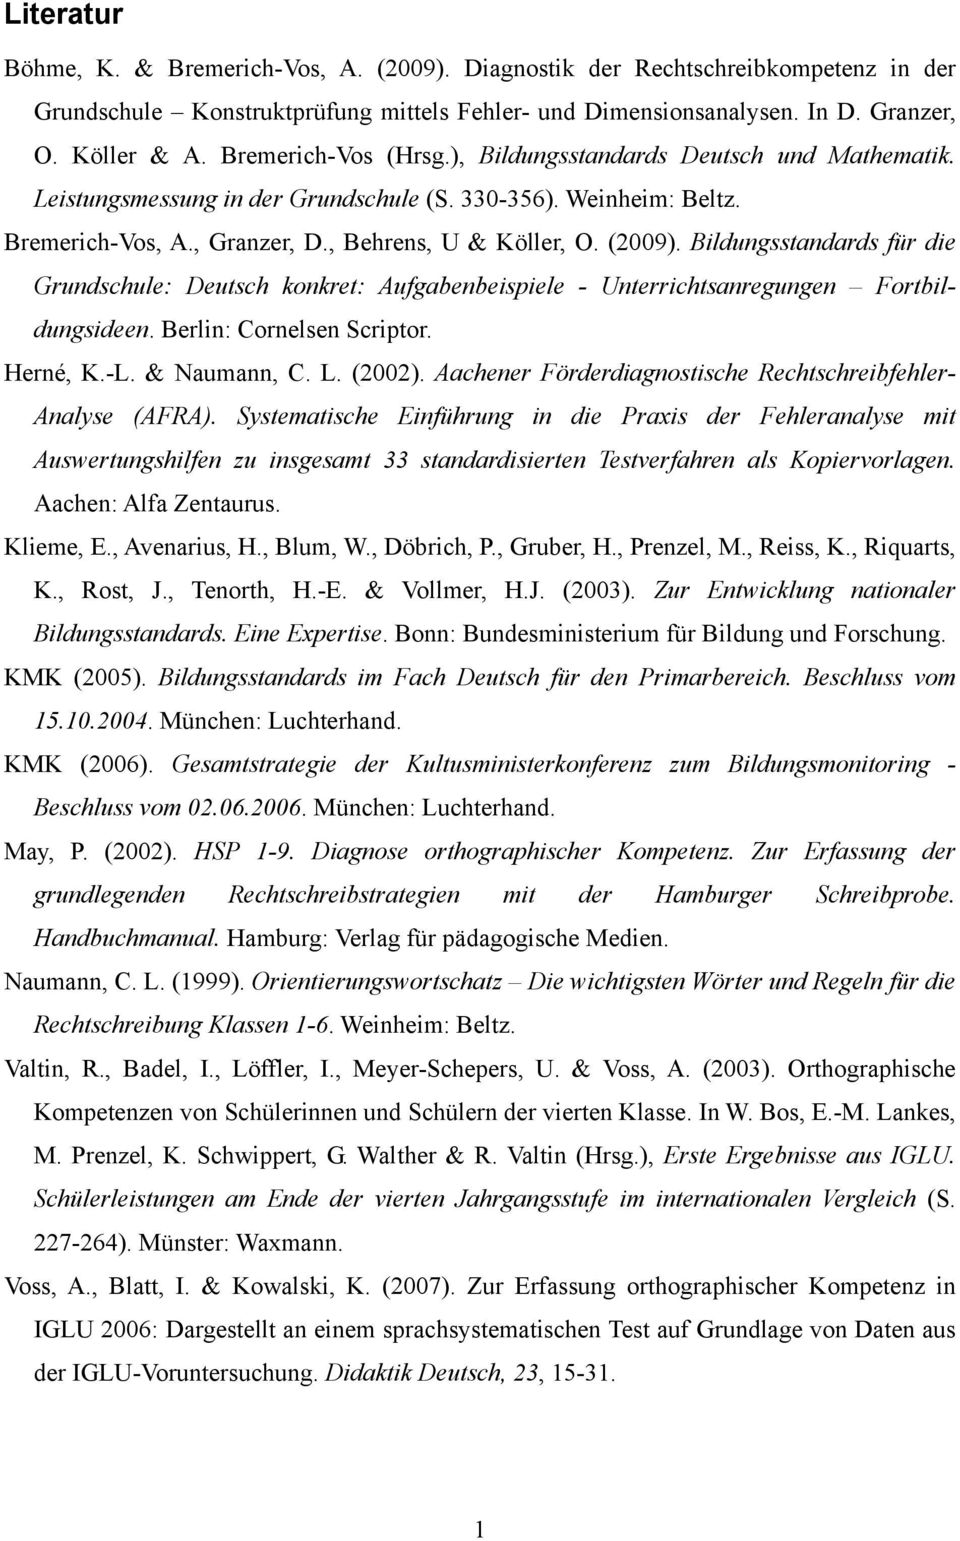 Bildungsstandards für die Grundschule: Deutsch konkret: Aufgabenbeispiele - Unterrichtsanregungen Fortbildungsideen. Berlin: Cornelsen Scriptor. Herné, K.-L. & Naumann, C. L. (2002).